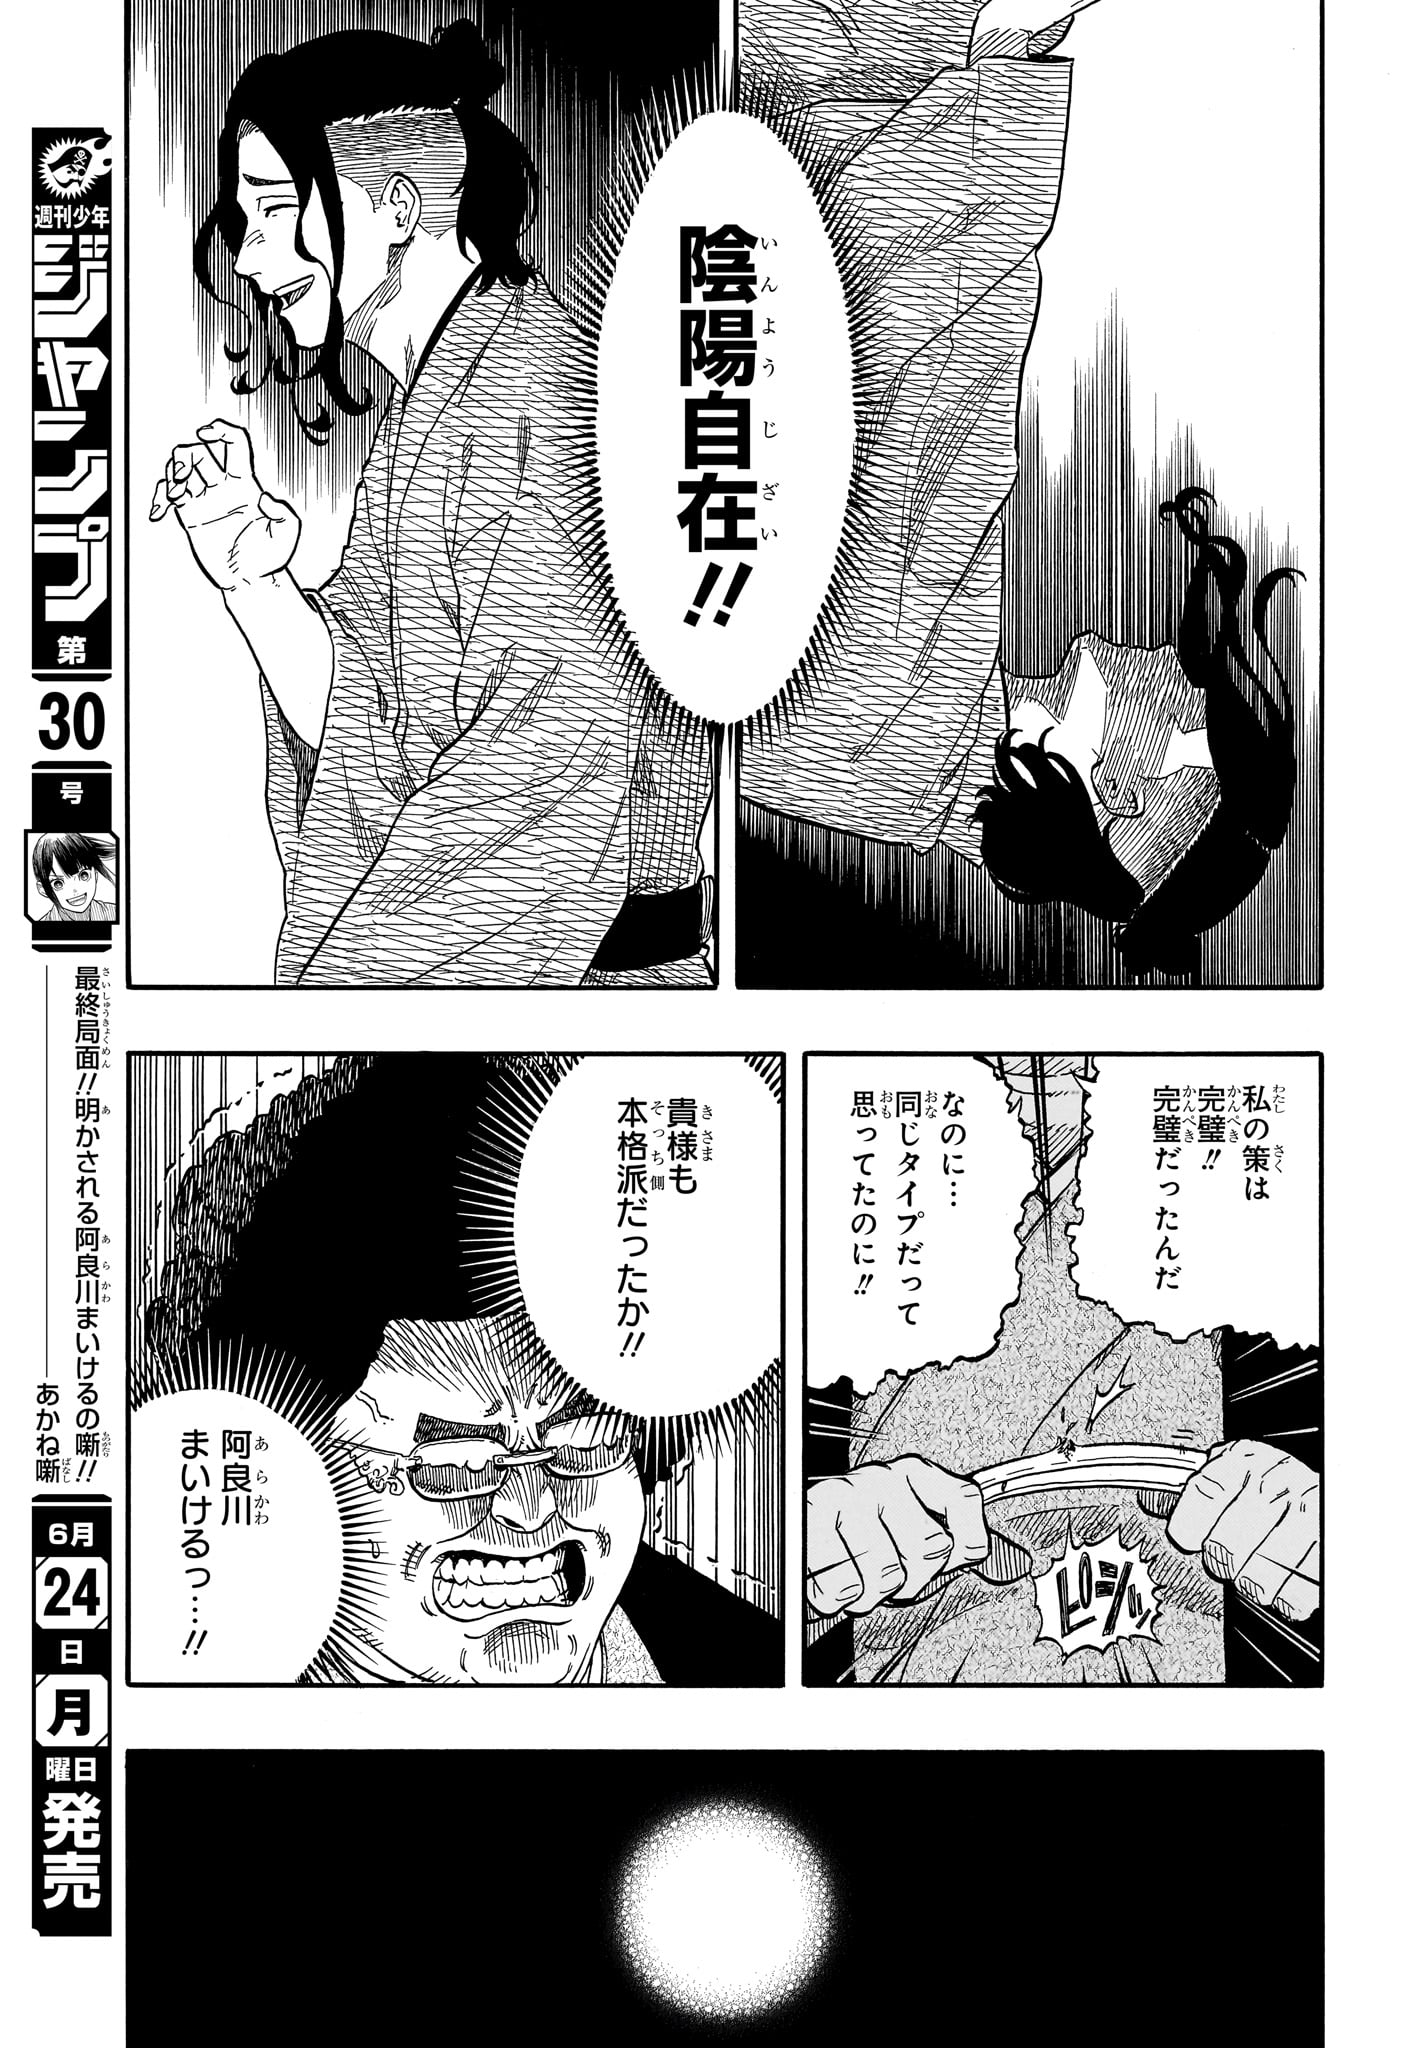 Akane-Banashi - Chapter 114 - Page 19